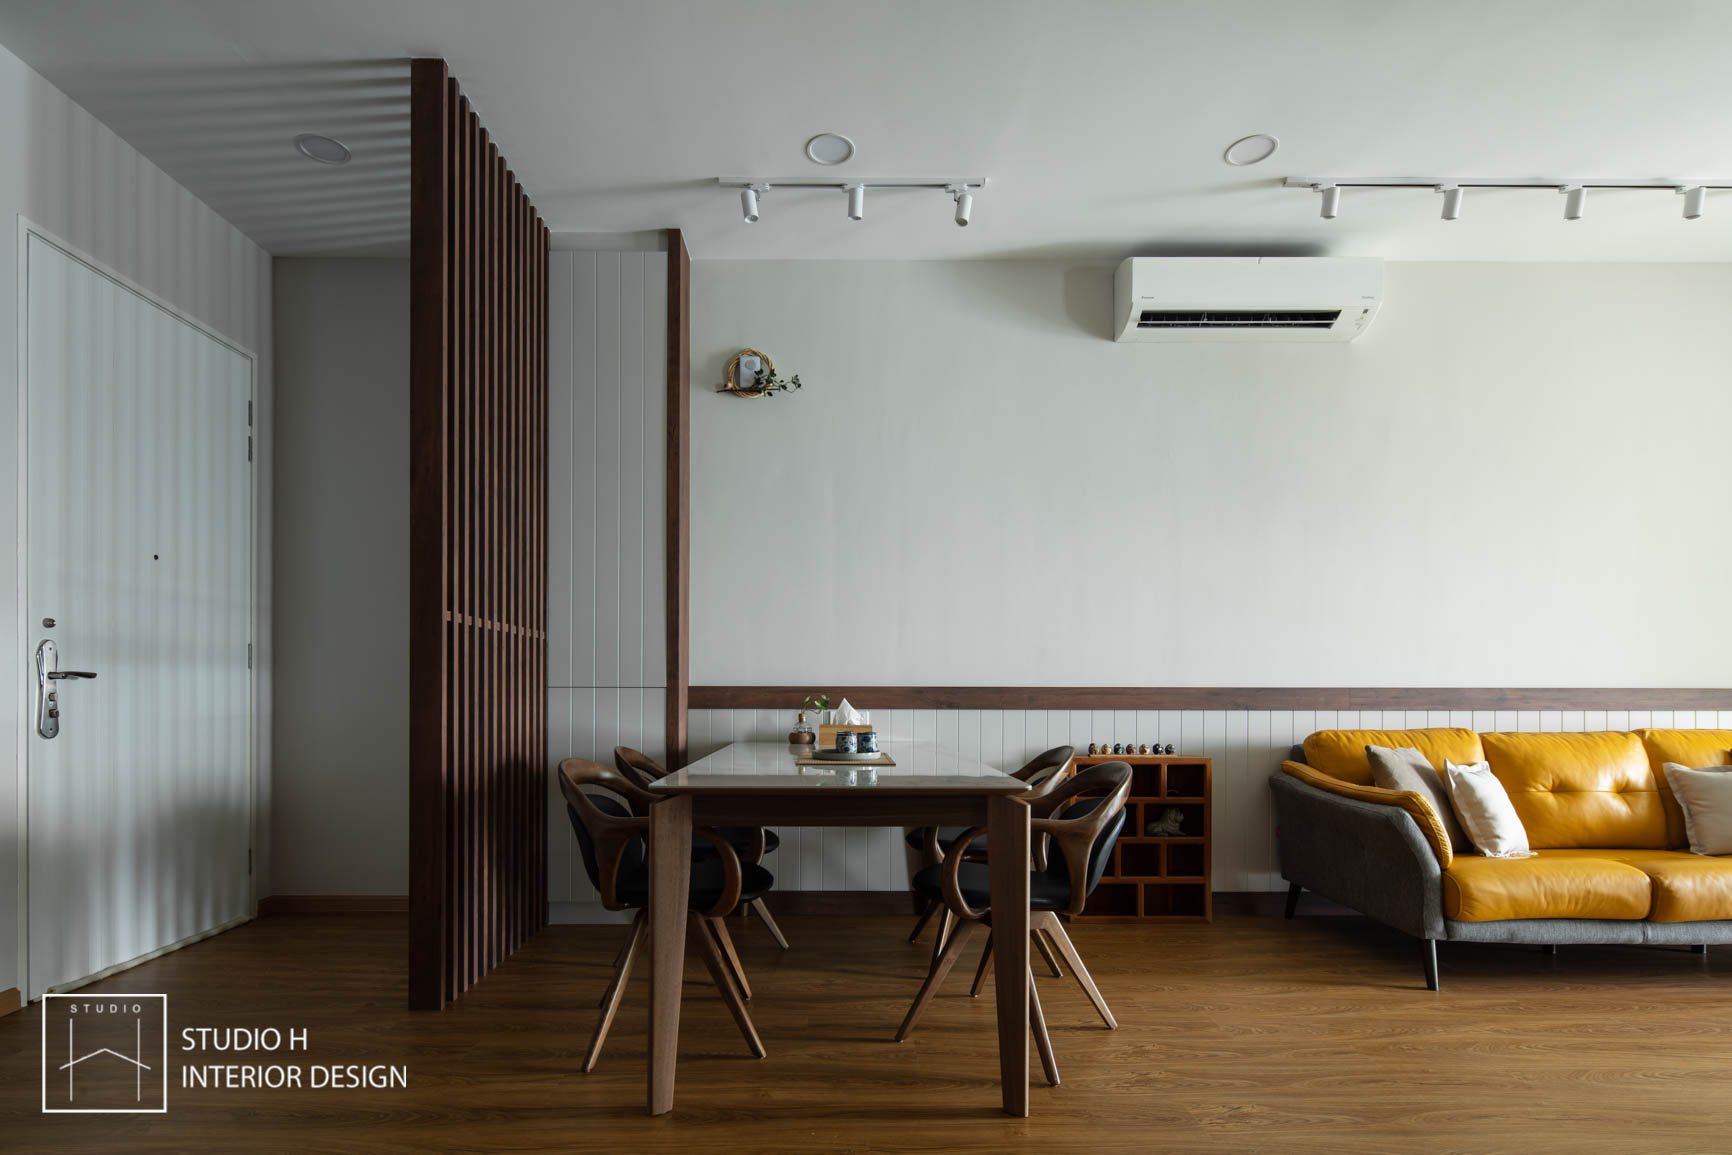 CW-house-dining-living-foyer-japanese-zen-interior-design-renovation